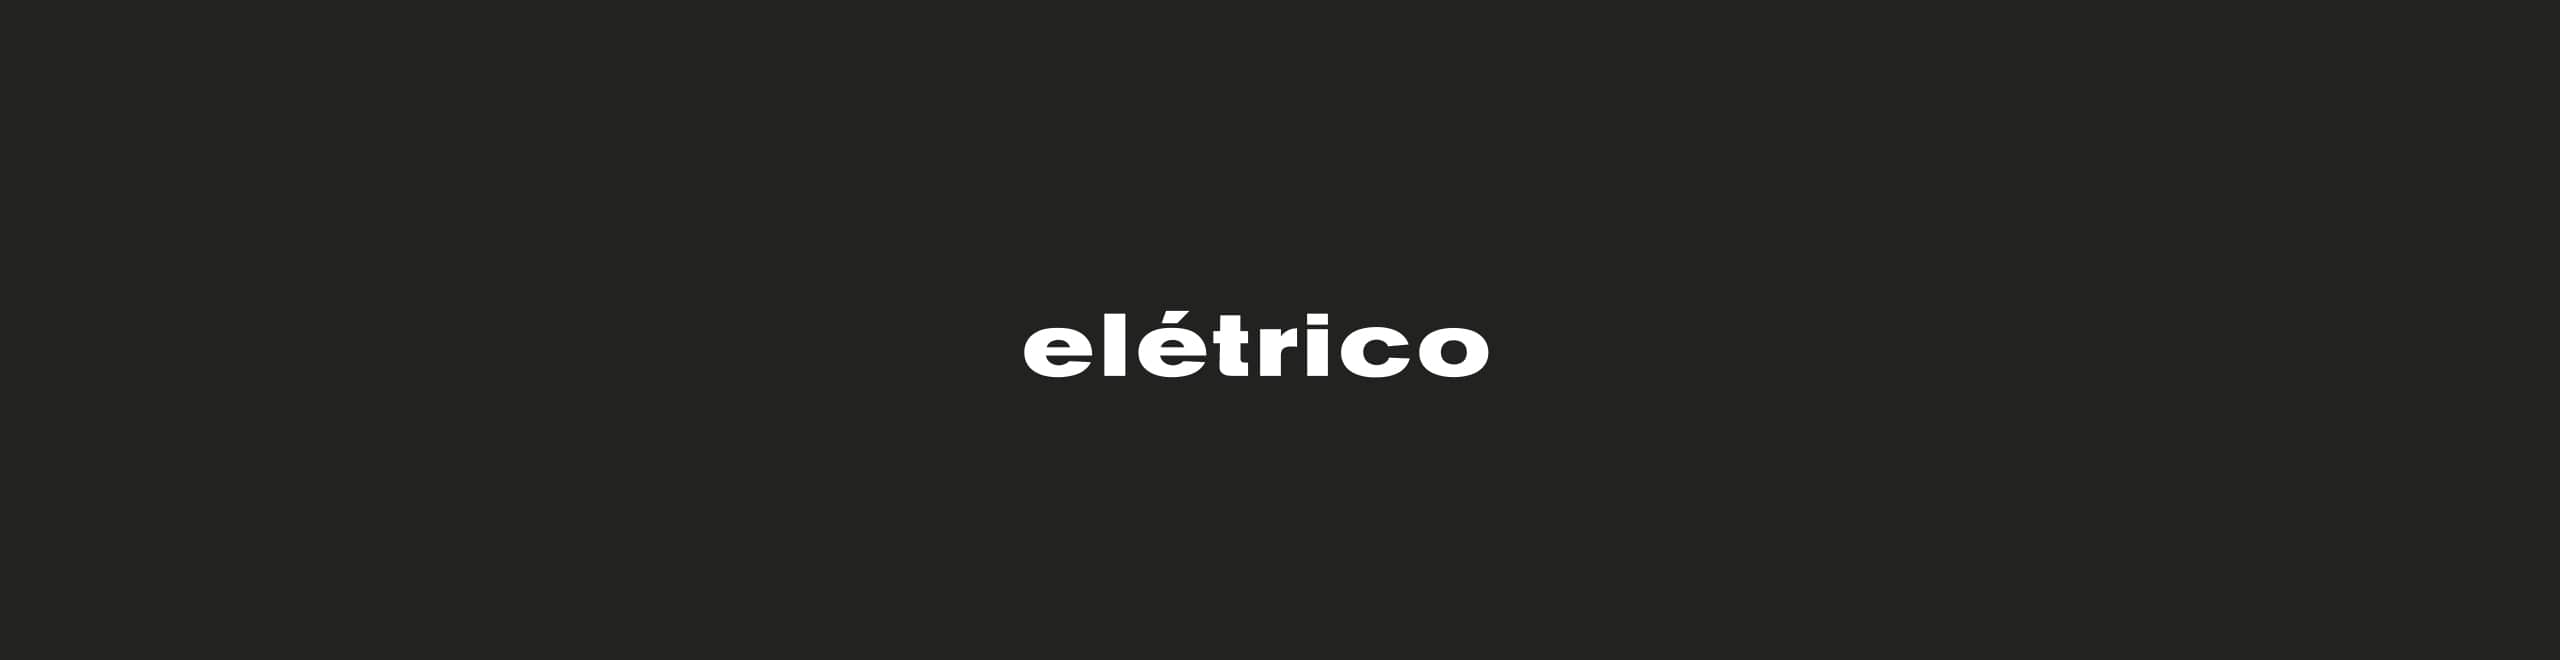 Eletrico-portfolio-justify-gallery-image-12